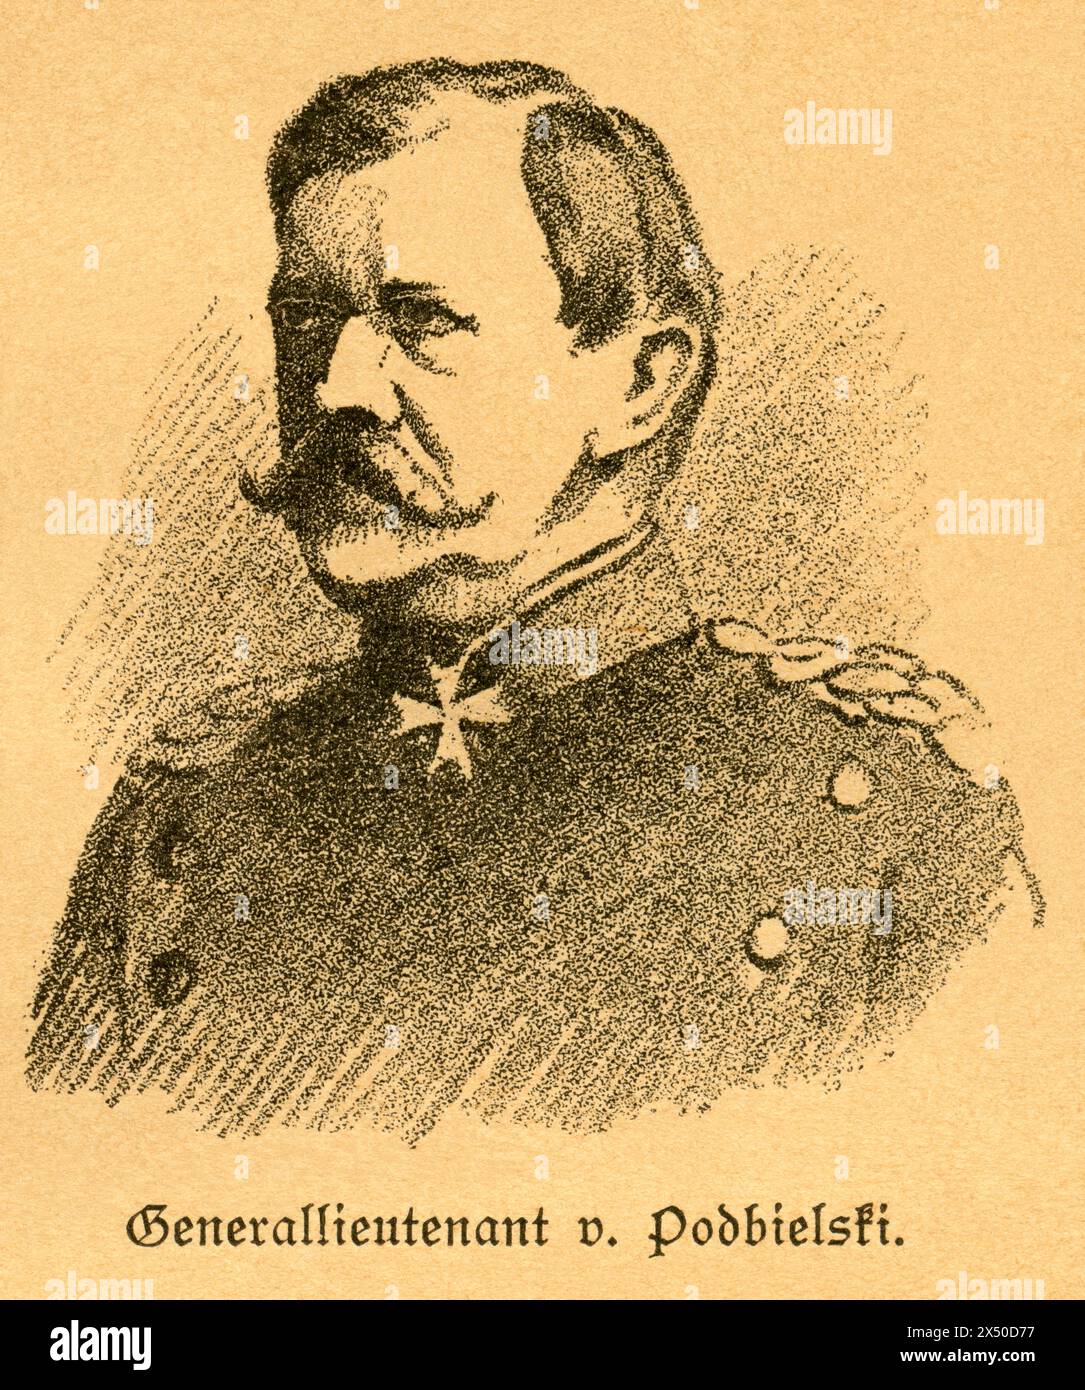 Theophil von Podbielski, général prussien de la cavalerie, portrait, DROIT D'AUTEUR DE L'ARTISTE N'A PAS A ELIMINER Banque D'Images